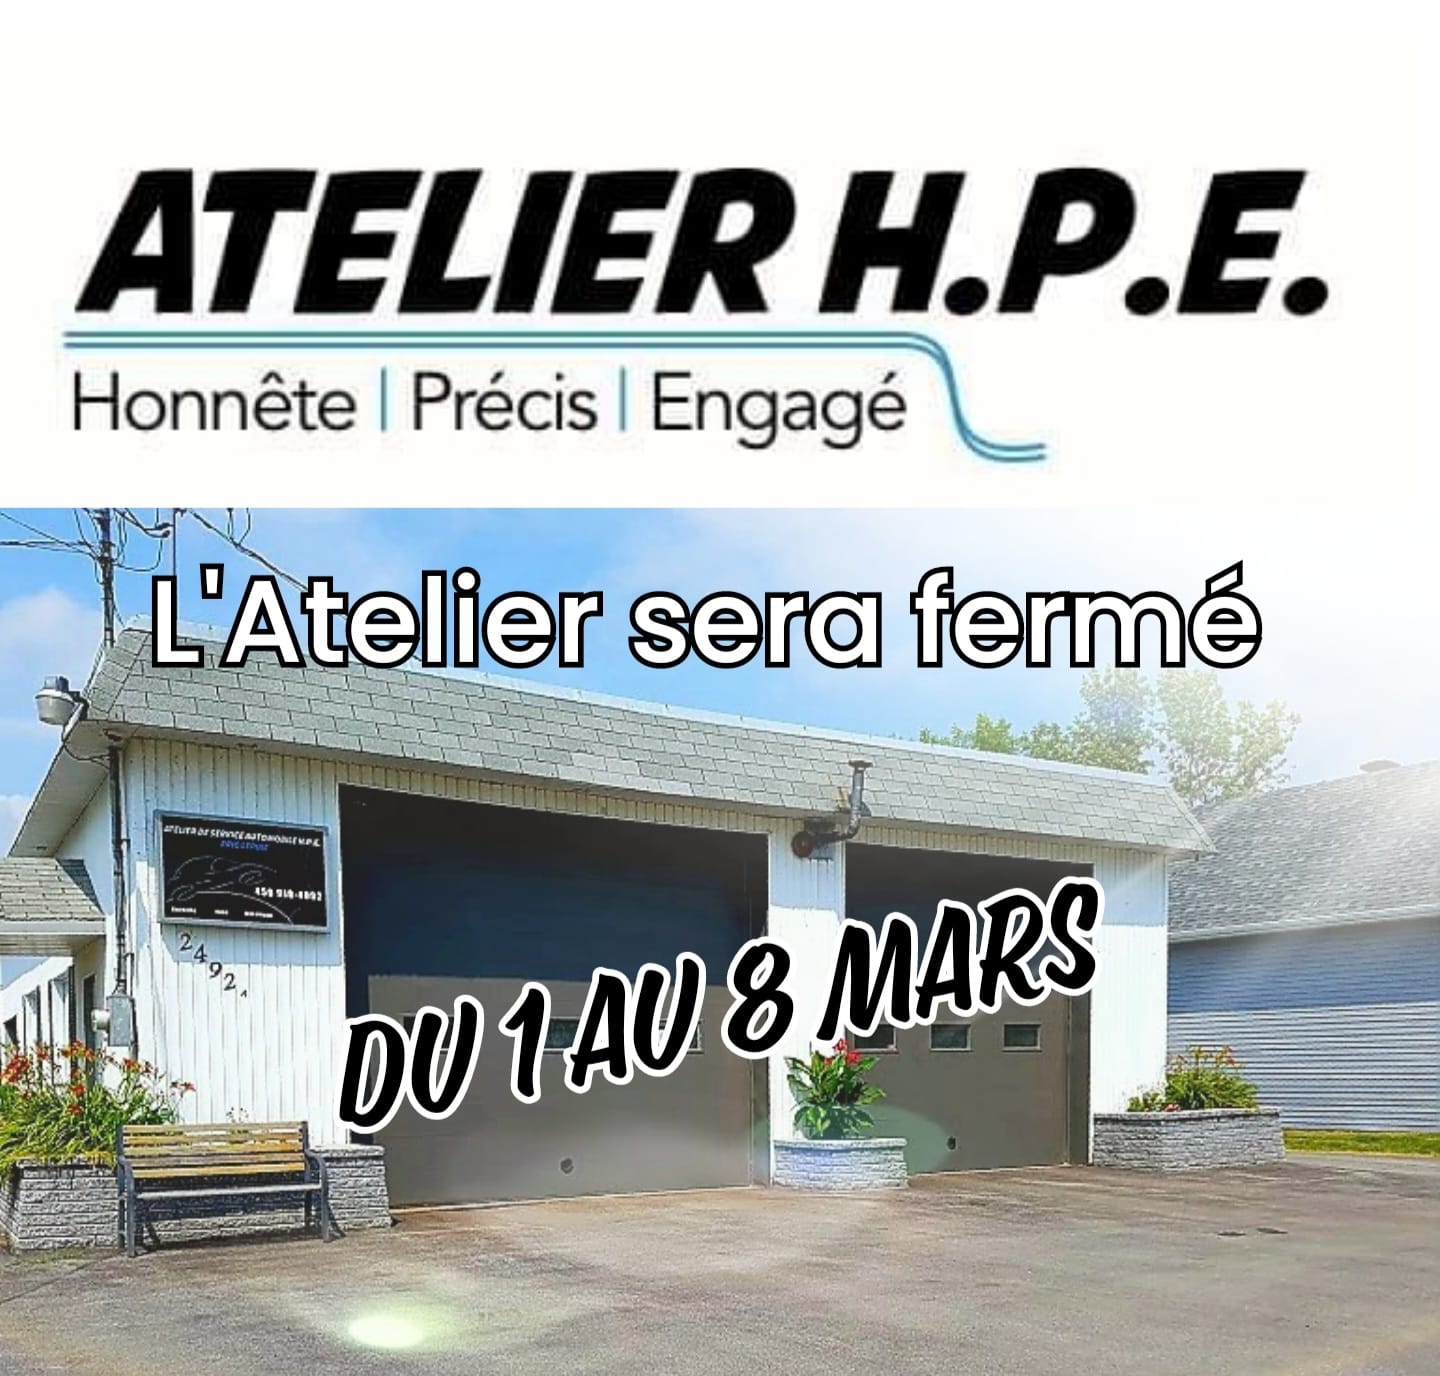 Atelier de service automobile H.P.E. 2492 Chem. Saint-Henri, Mascouche Quebec J7K 3C3